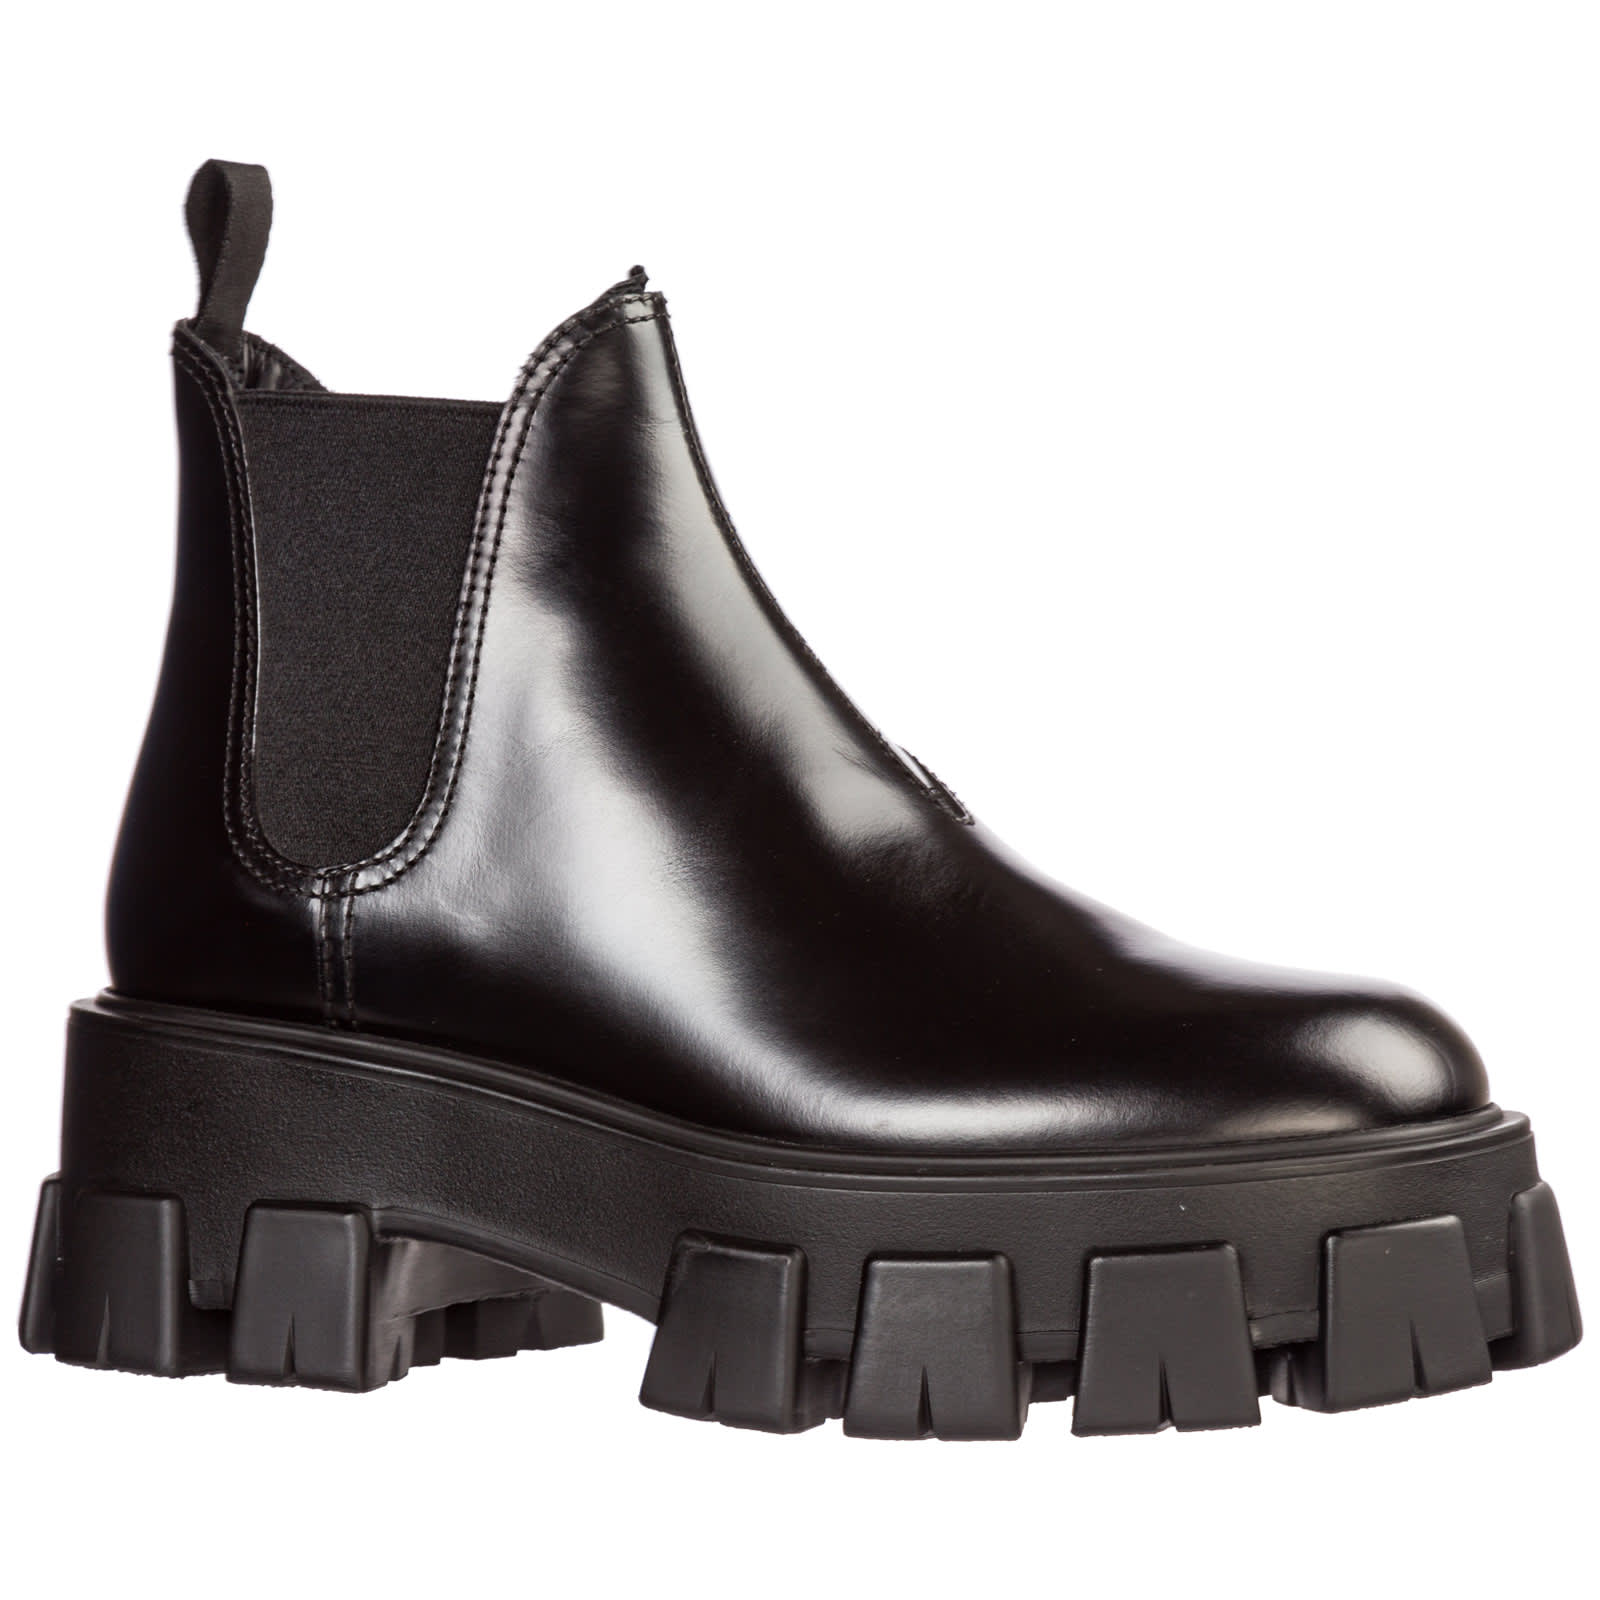 Prada Prada Leather Heel Ankle Boots Booties Monolith - Nero - 11037355 ...